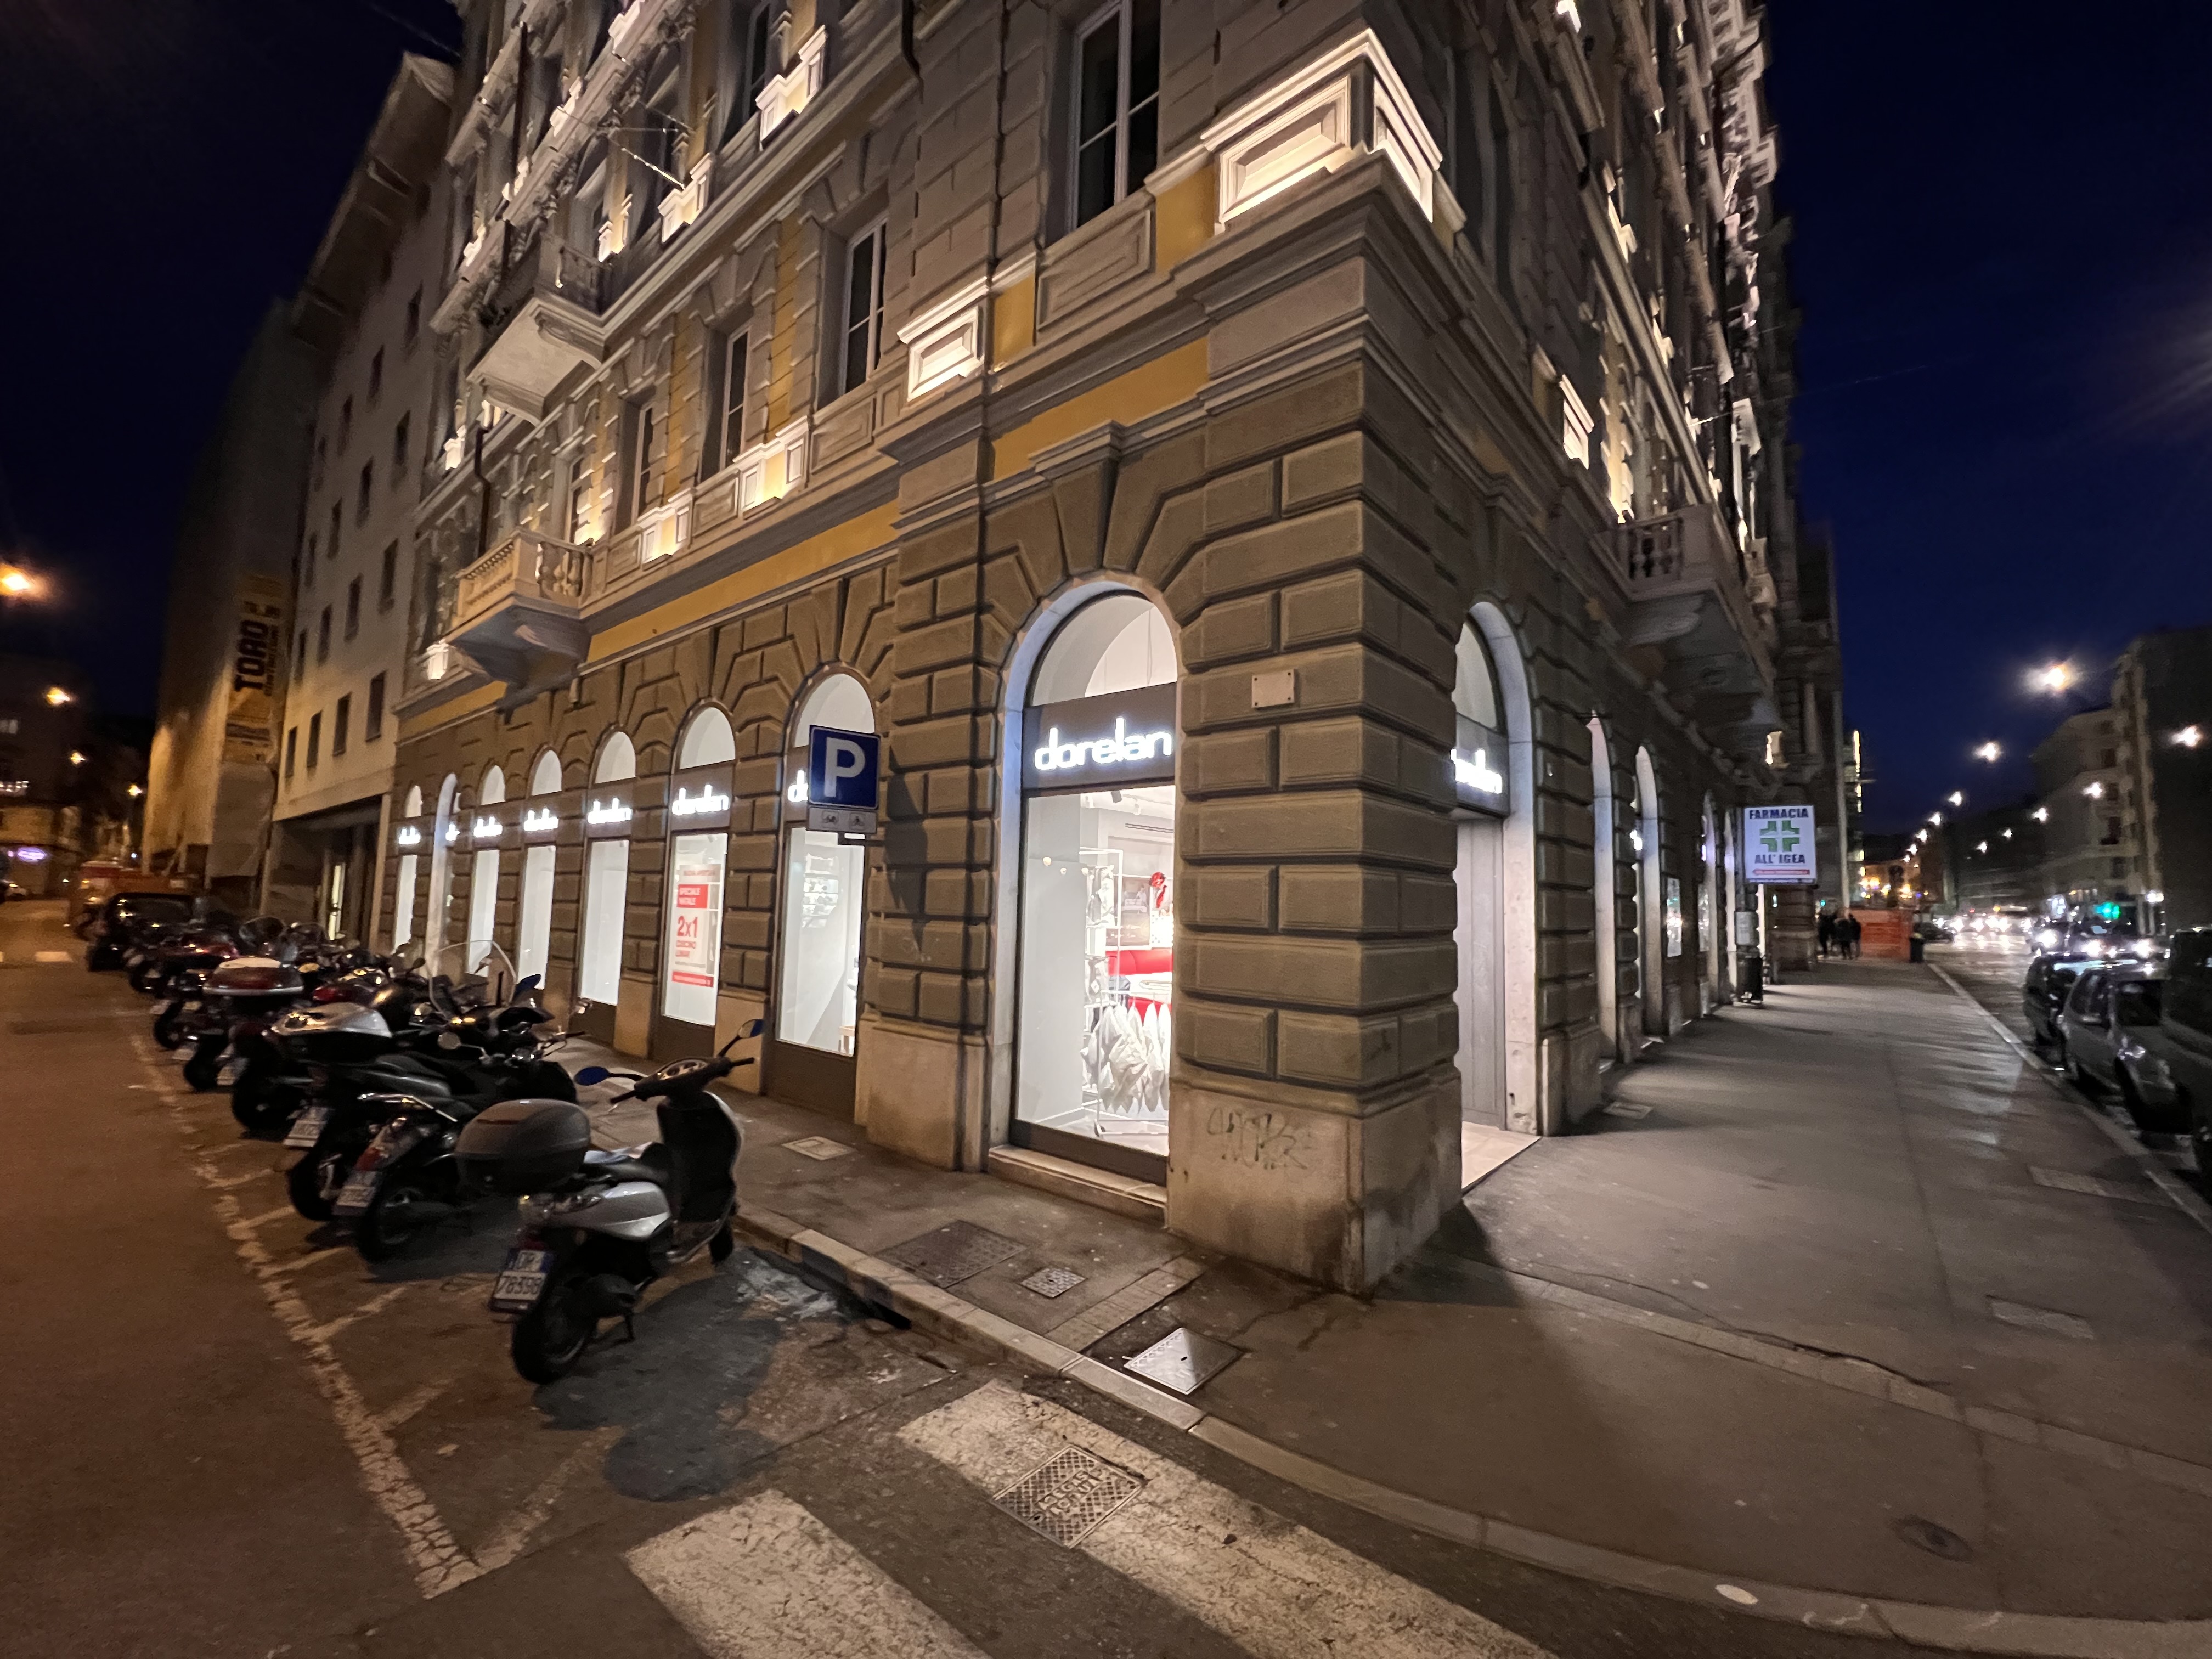 Dorelan inaugura il nuovo punto vendita a Trieste